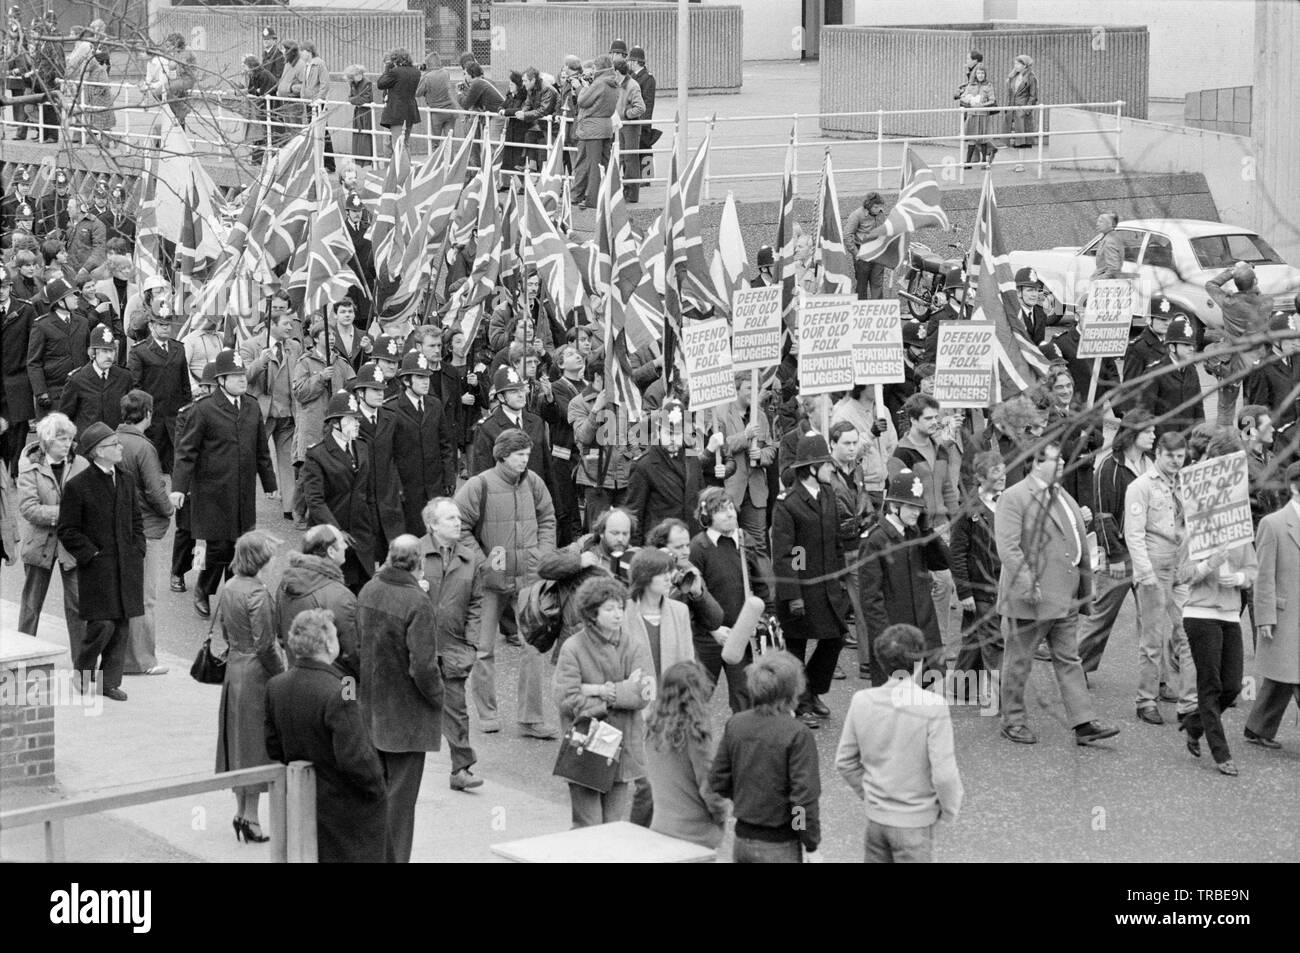 1980. Einen Marsch von der Nationalen Front, einer britischen Rechts faschistischen Partei, in Camberwell New Road, London, angeführt von seinem dann Führer Martin Webster. Banner verkünden würde unsere alten volkstümlichen efend' und 'Rückführung Muggers". Stockfoto